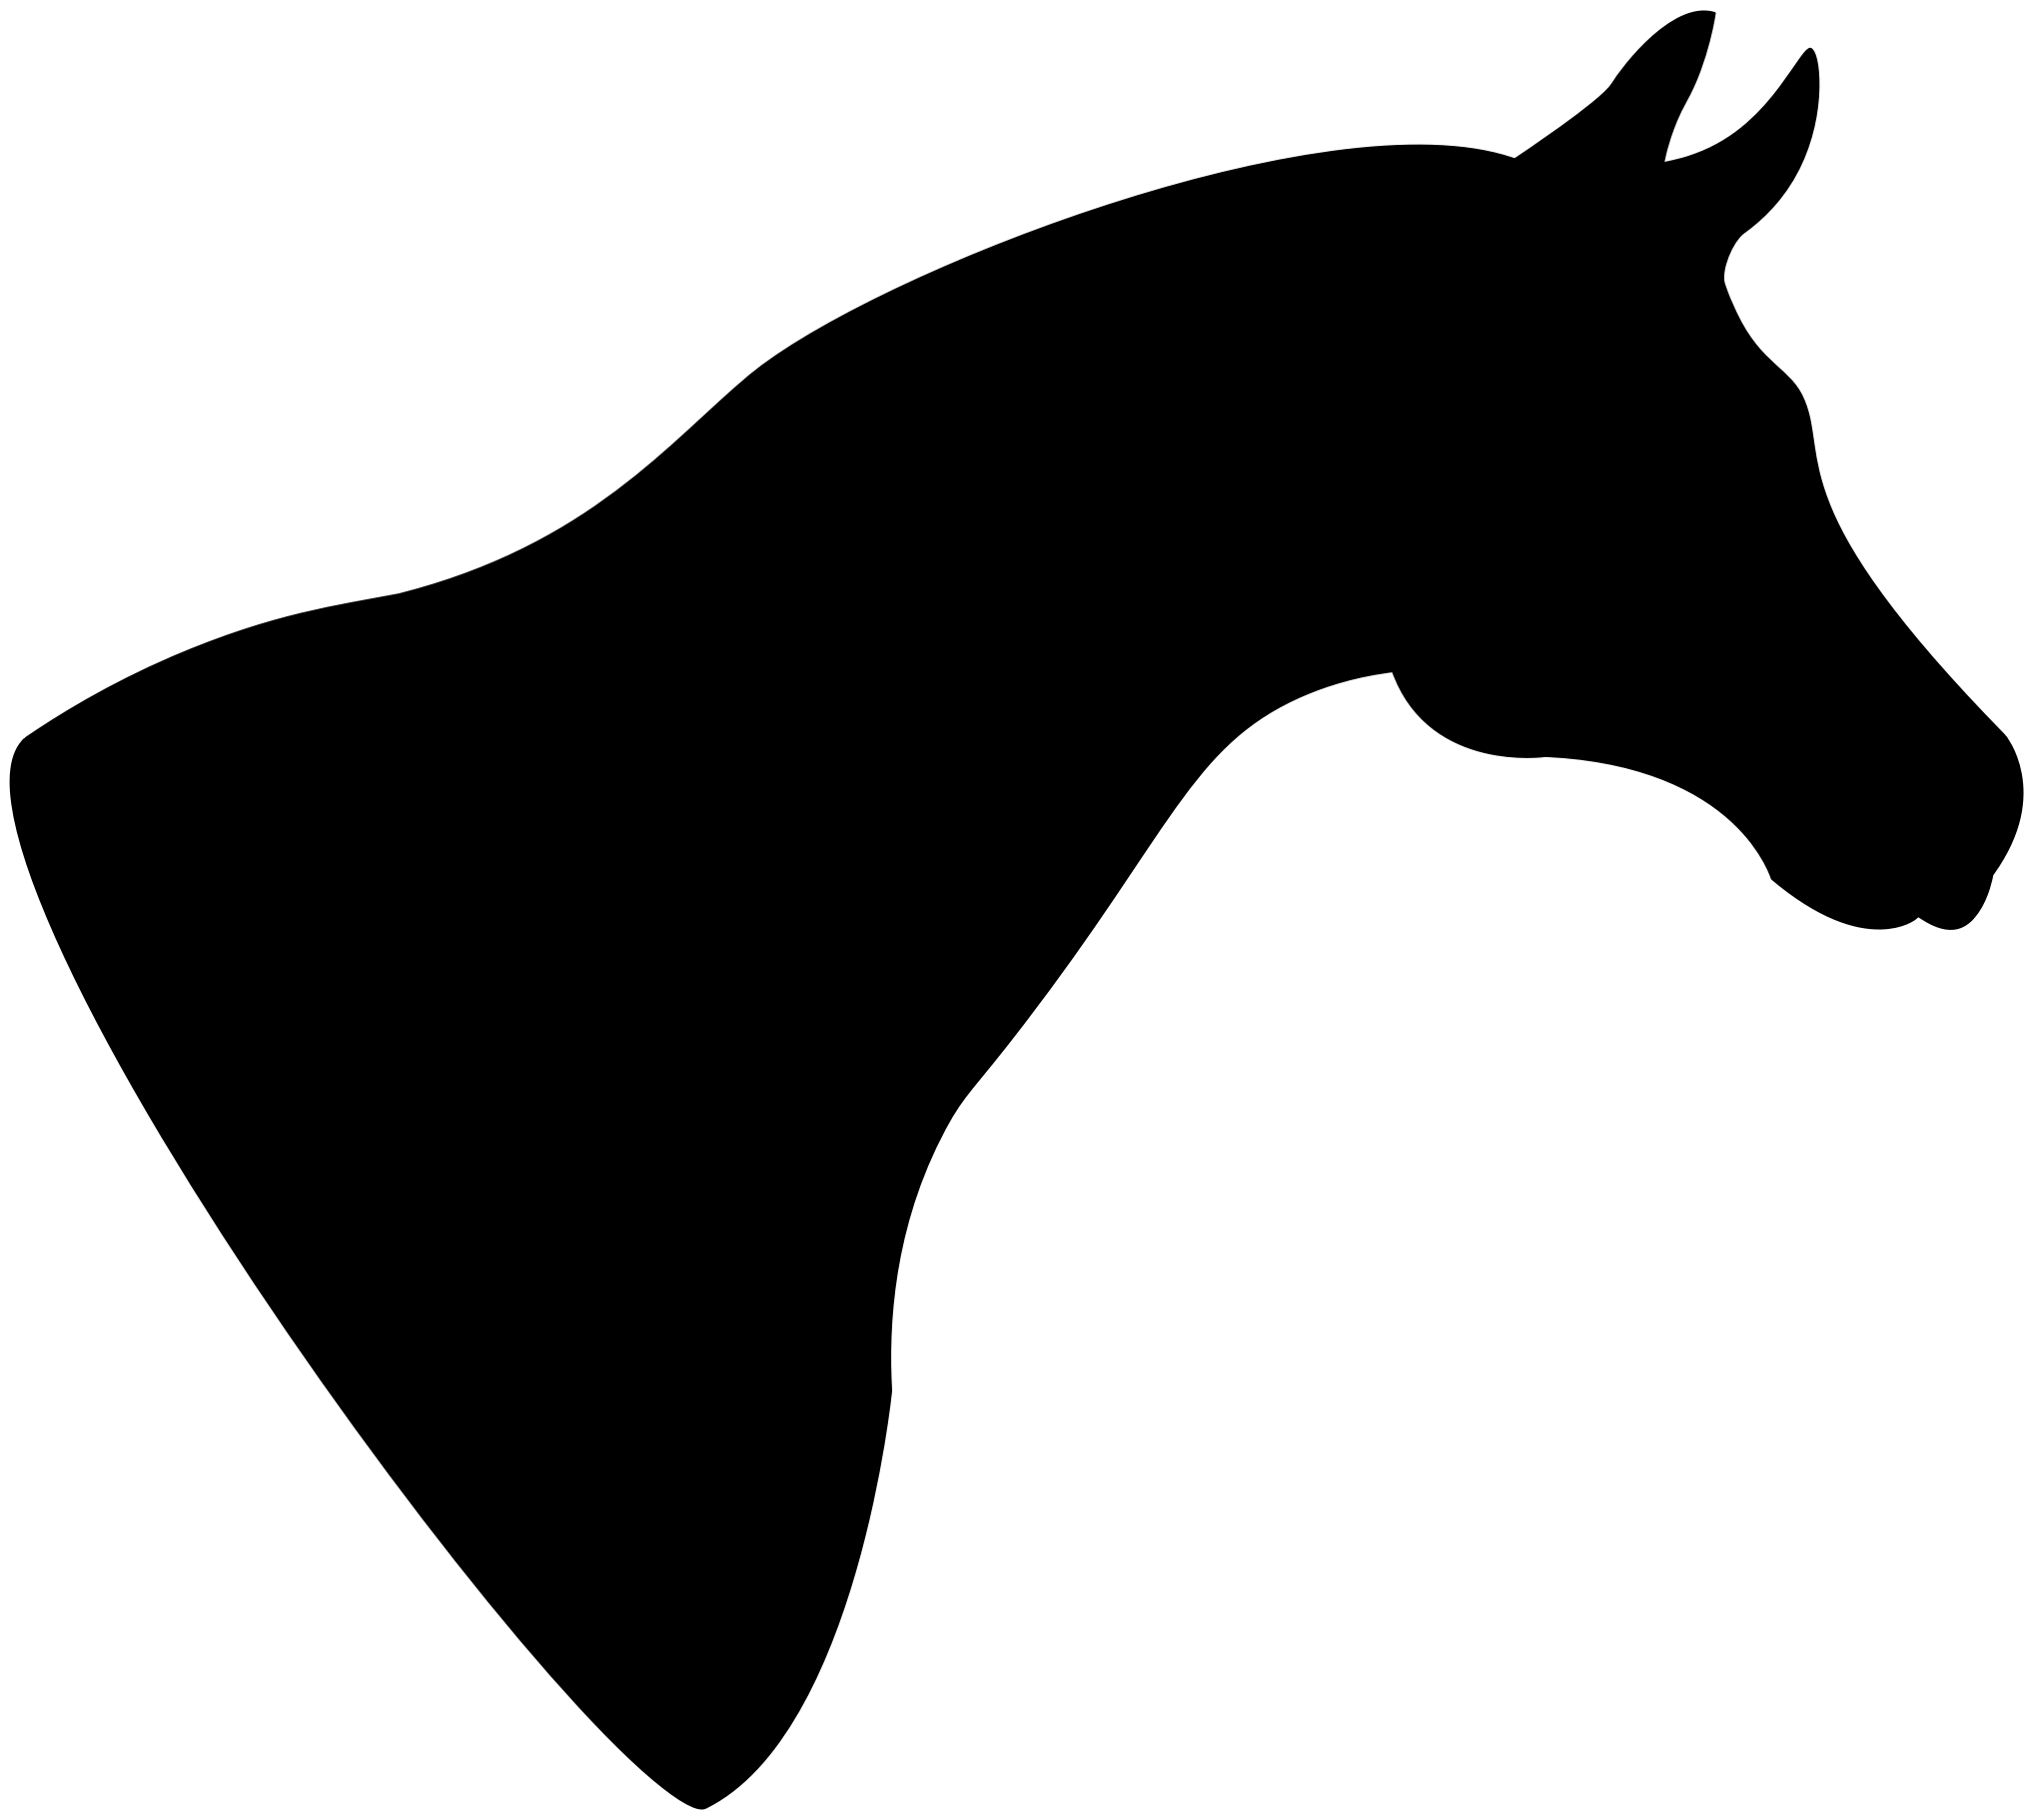 clipart horse head silhouette - photo #13